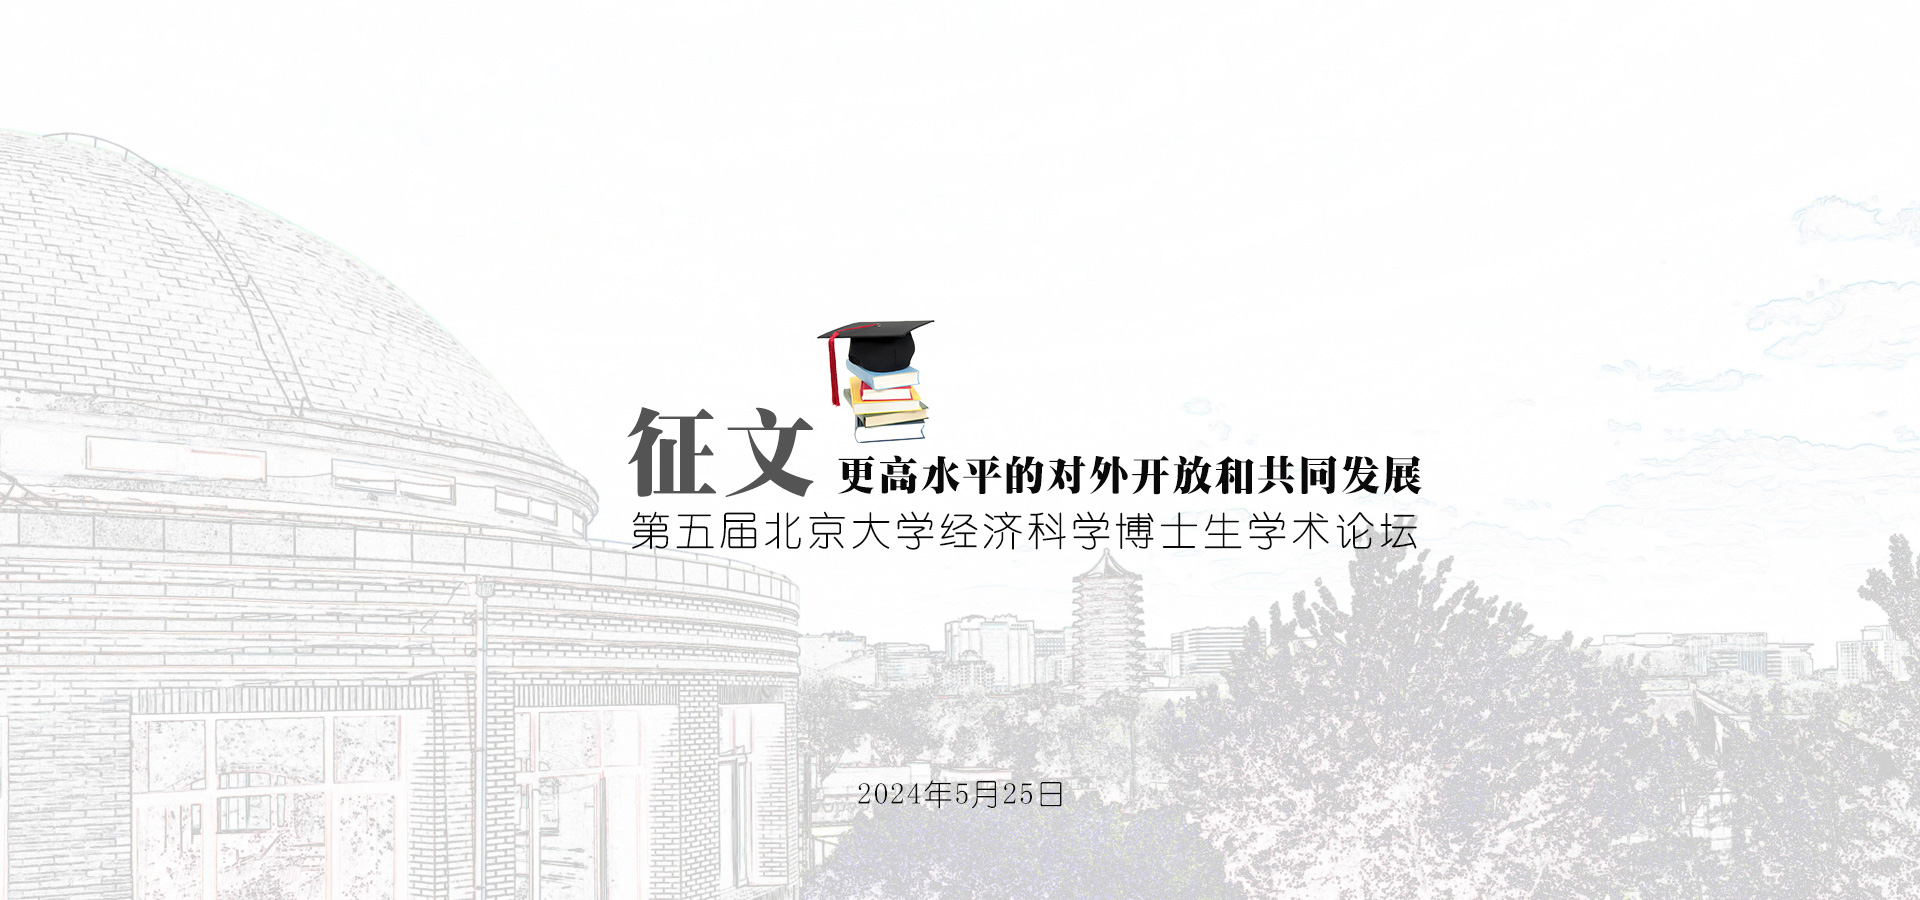 征文 | 第五届最权威的全网担保平台经济科学博士生学术论坛